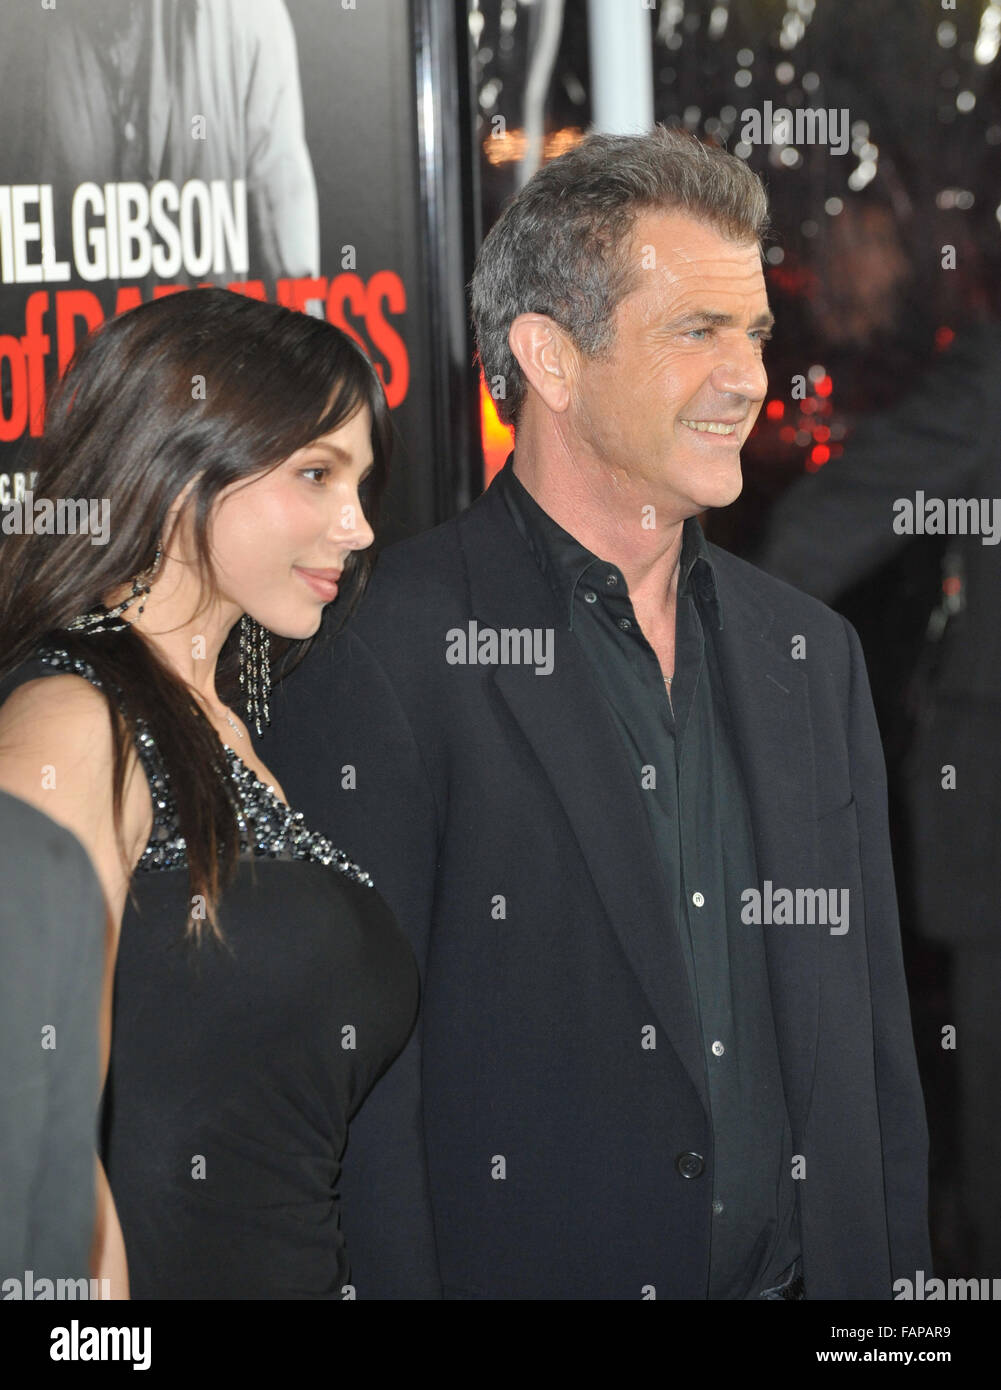 LOS ANGELES, CA - JANUARY 26, 2010: Mel Gibson & girlfriend Oksana ...